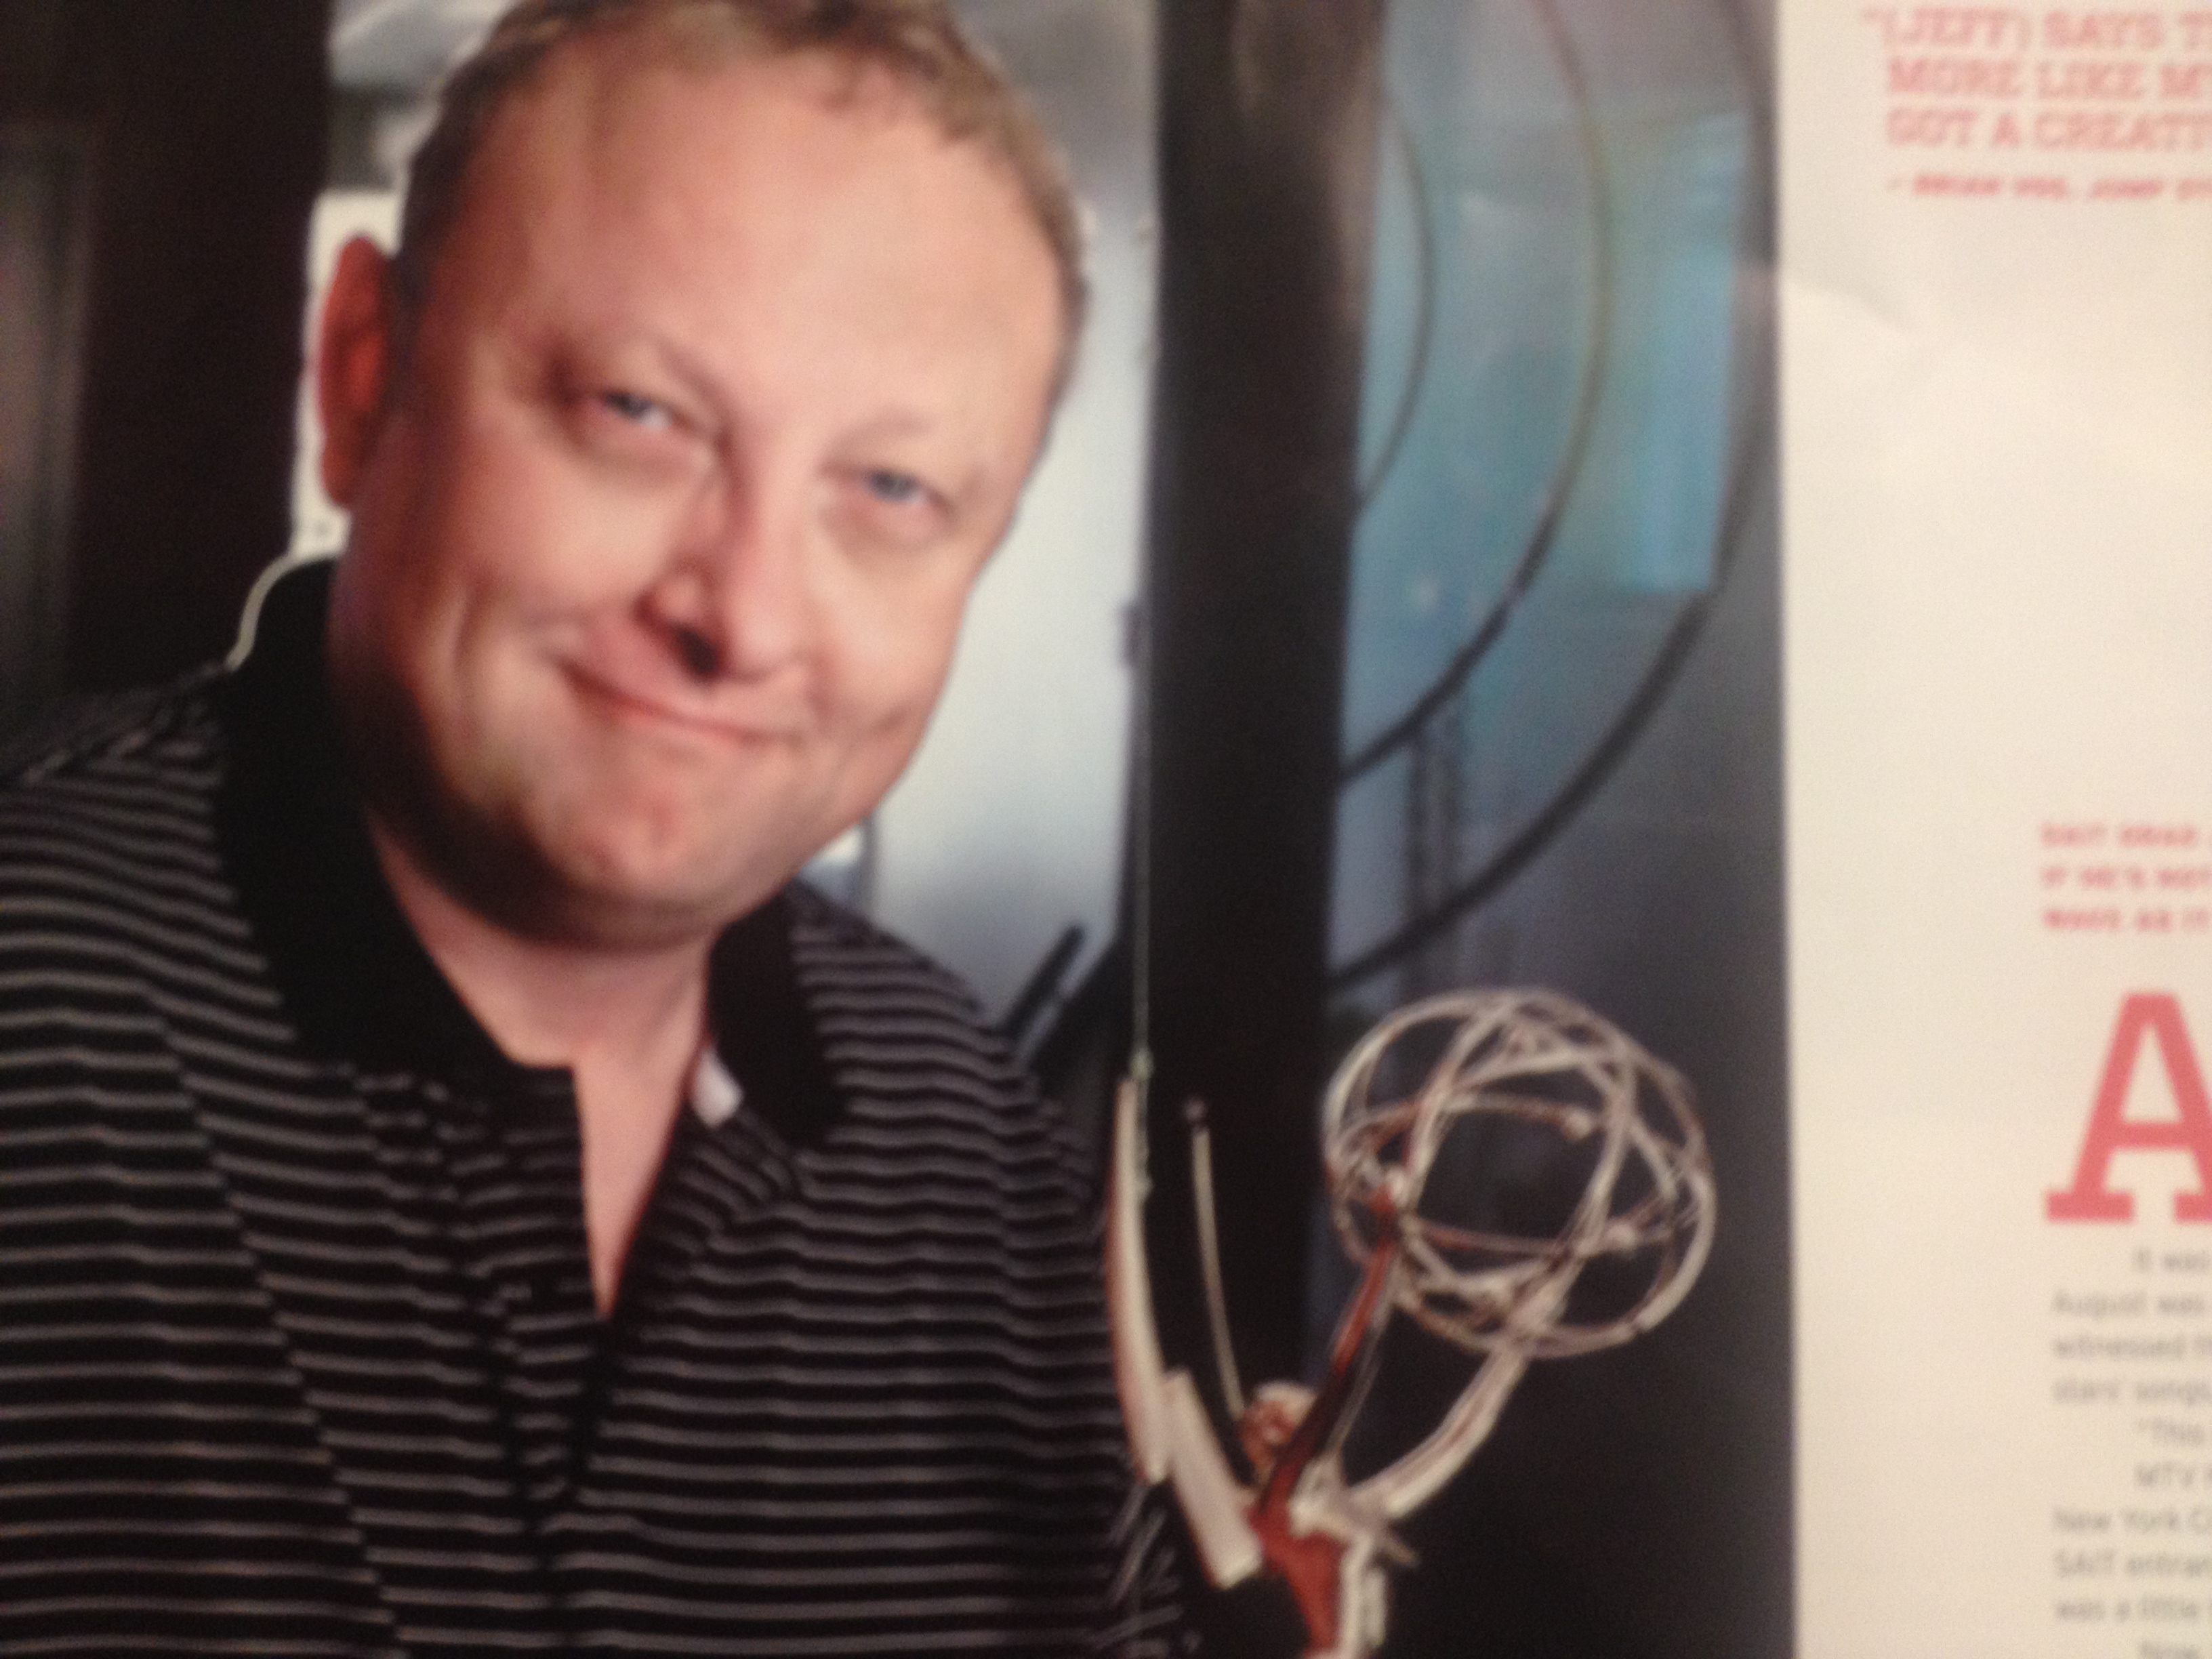 Jeff August - Editor Emmy Award Winner Friend of mine